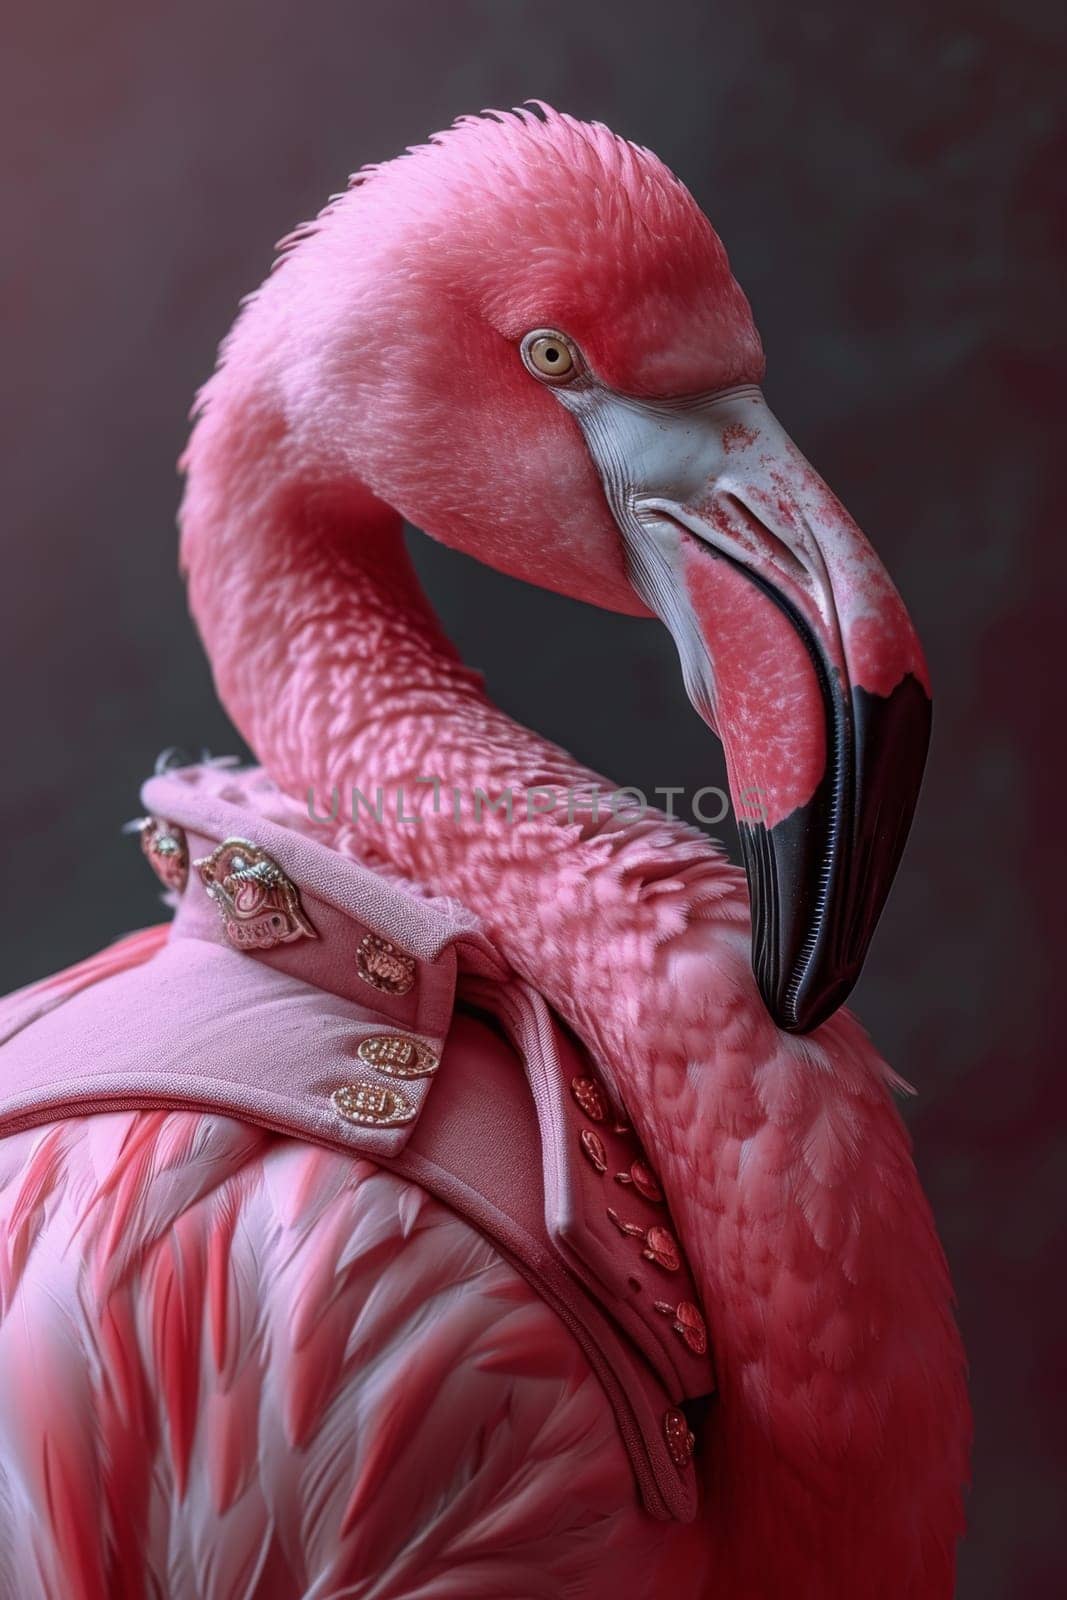 Pink flamingo on a dark background.